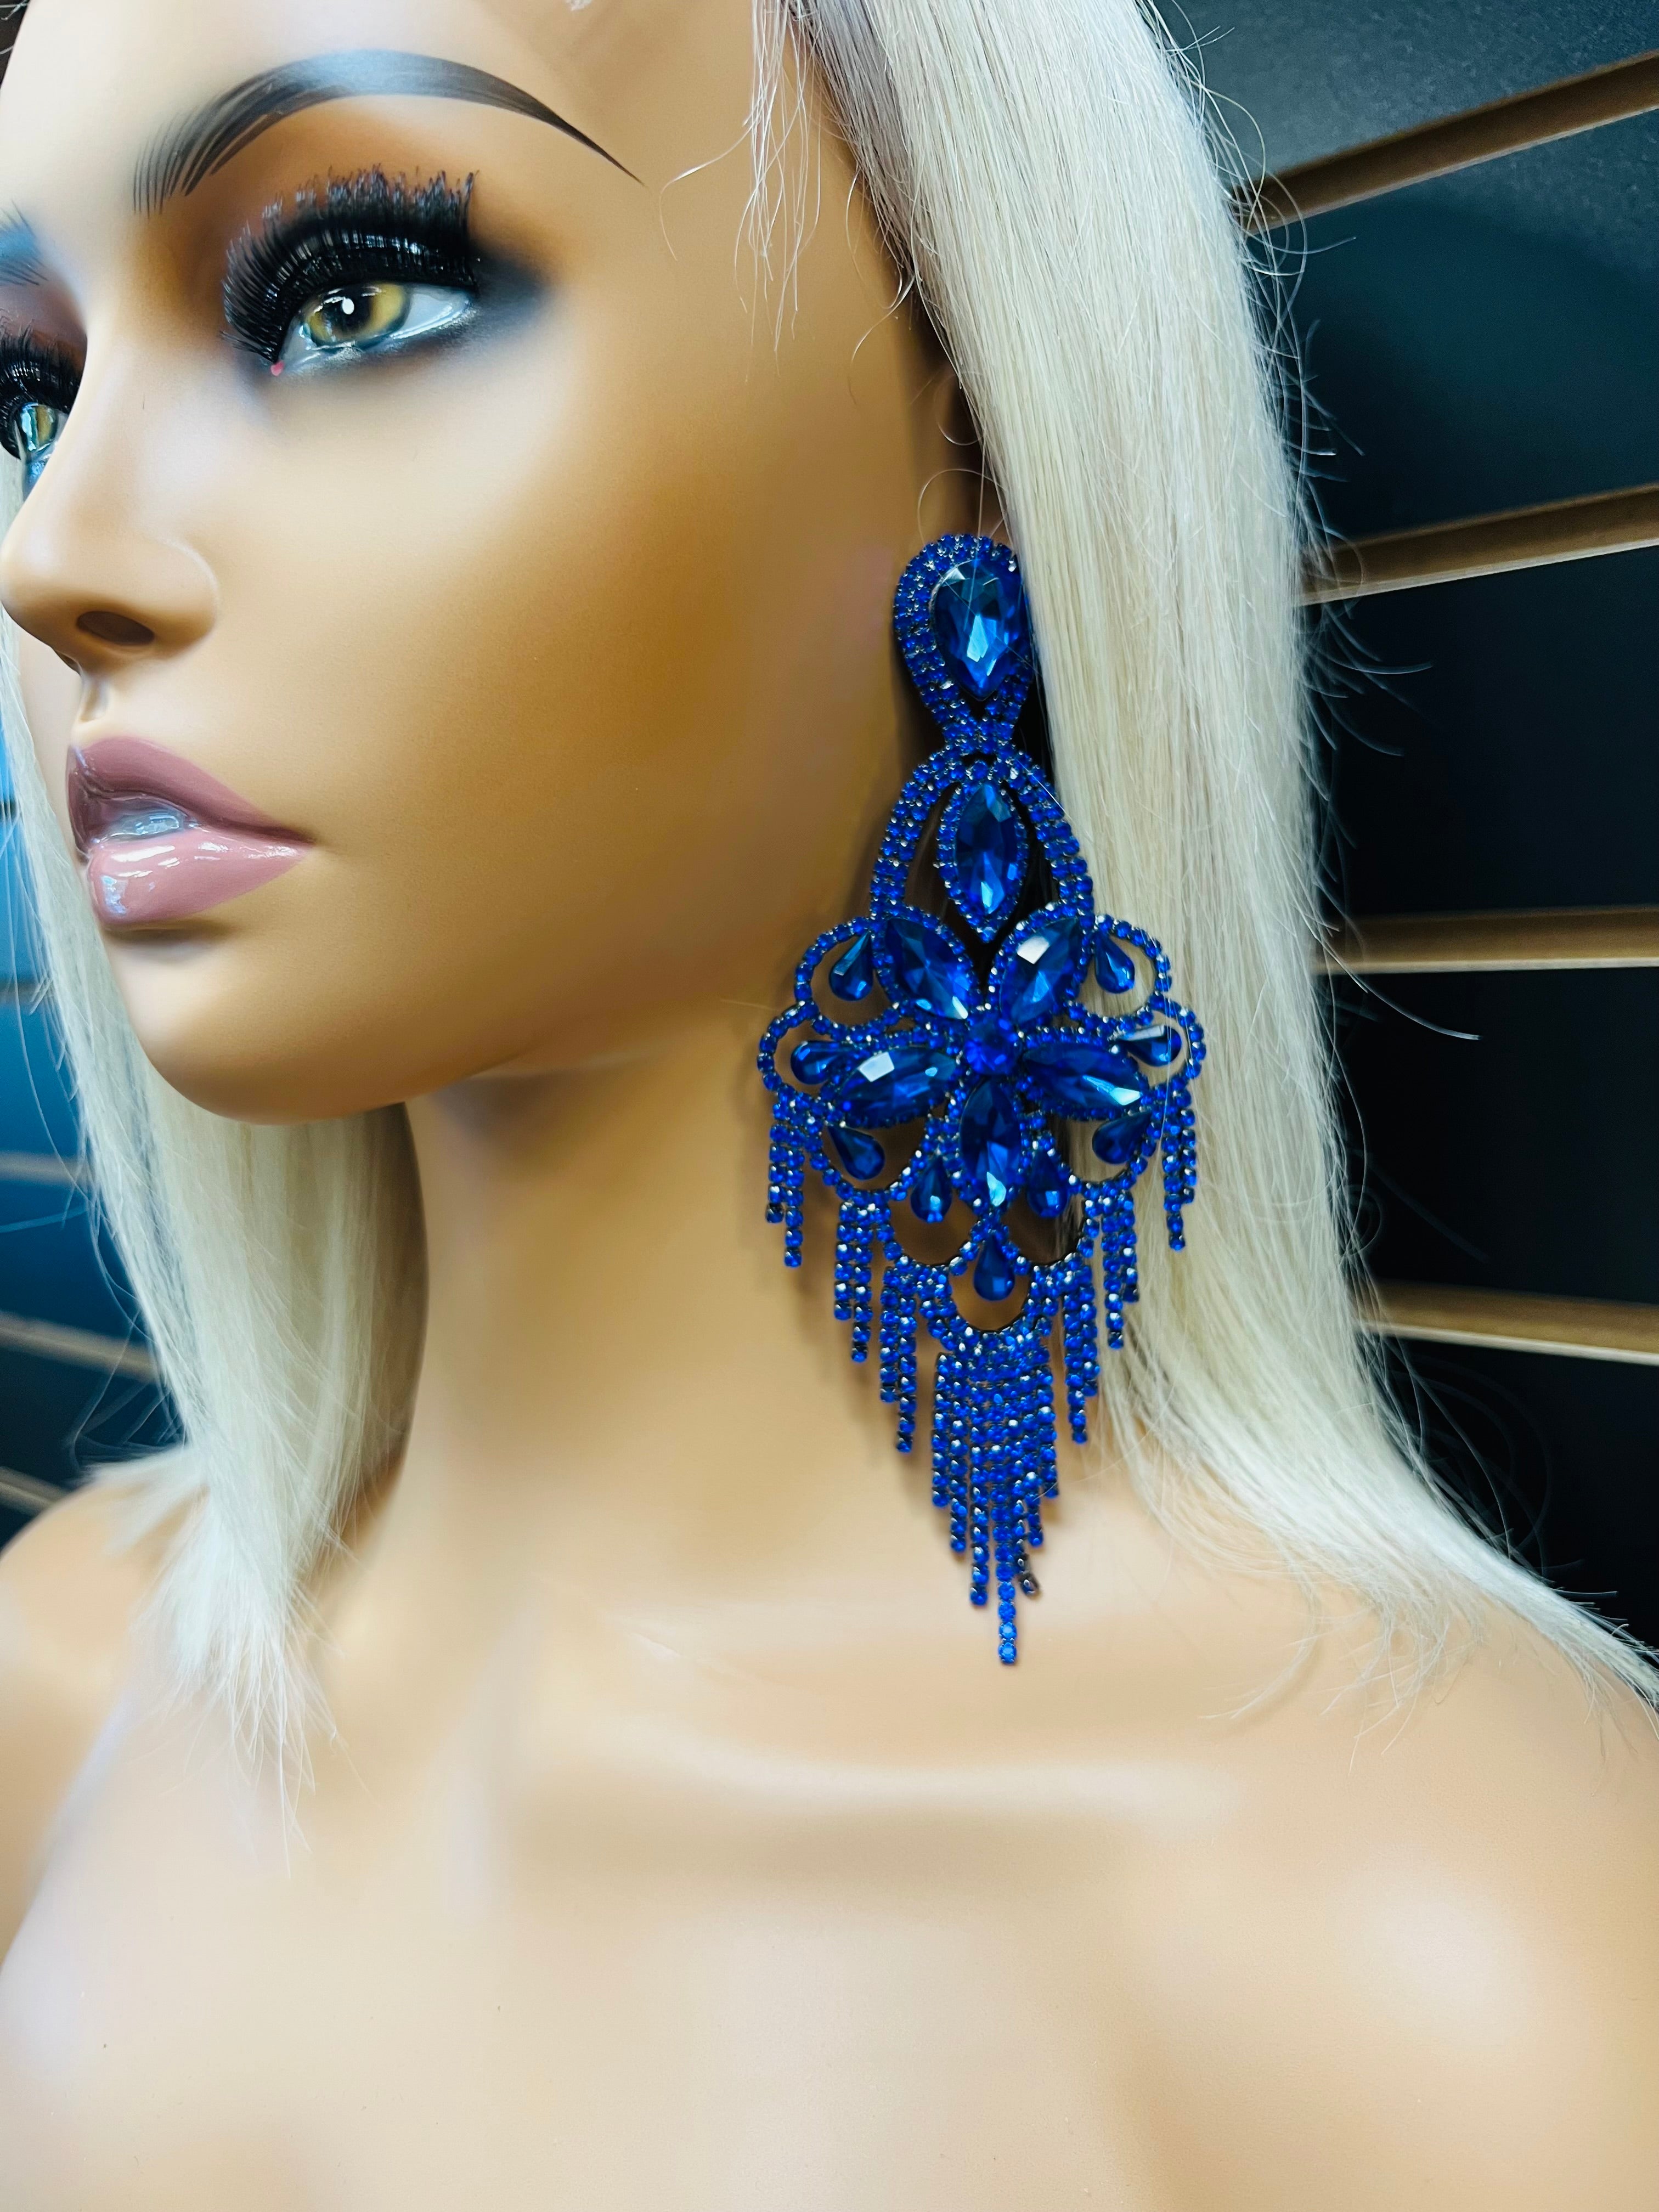 Blue clip on earrings